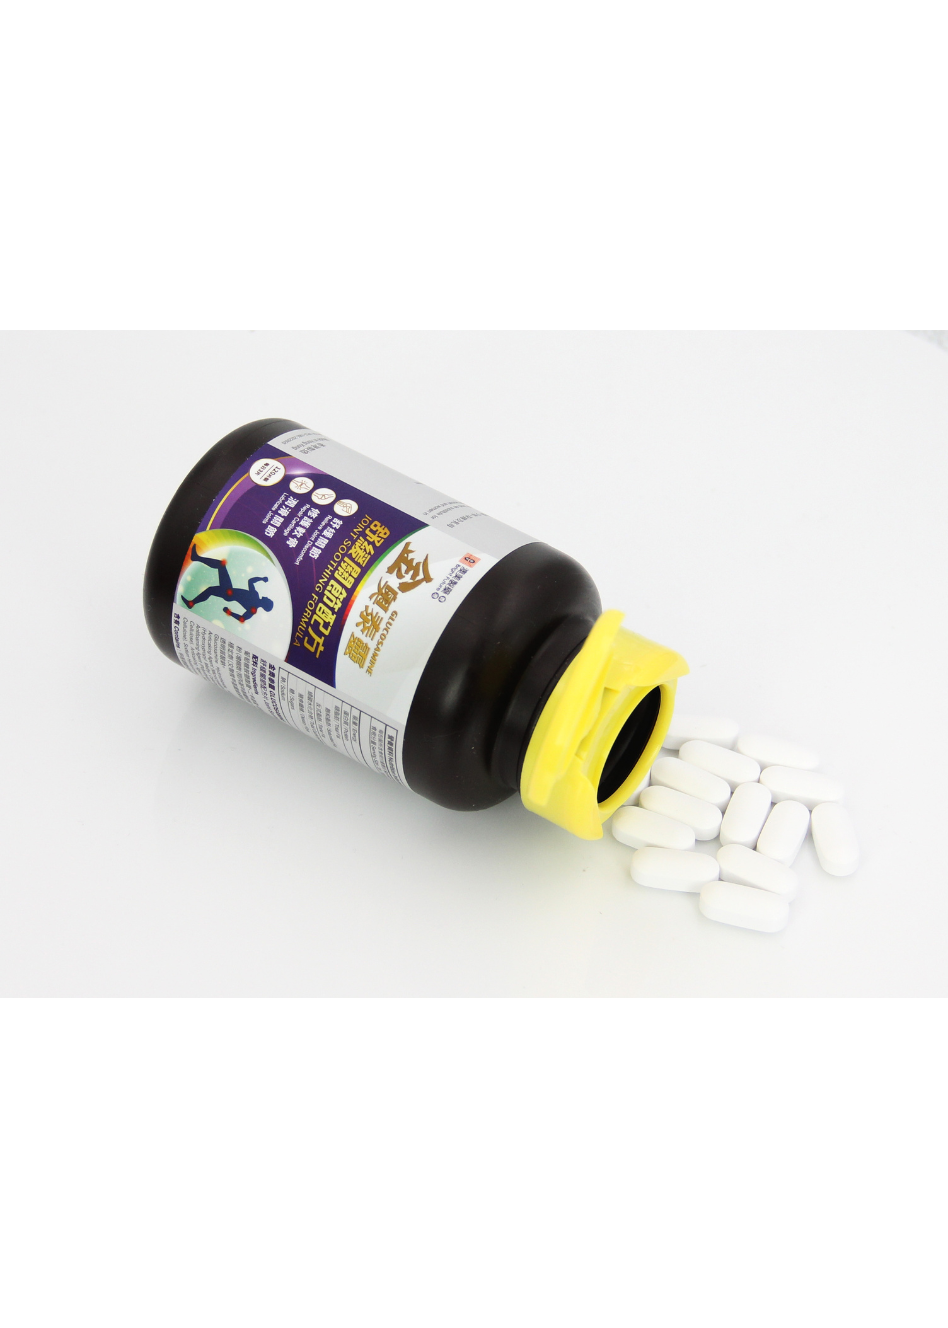 澳美製藥®金奧泰靈-舒緩關節配方(紫瓶)